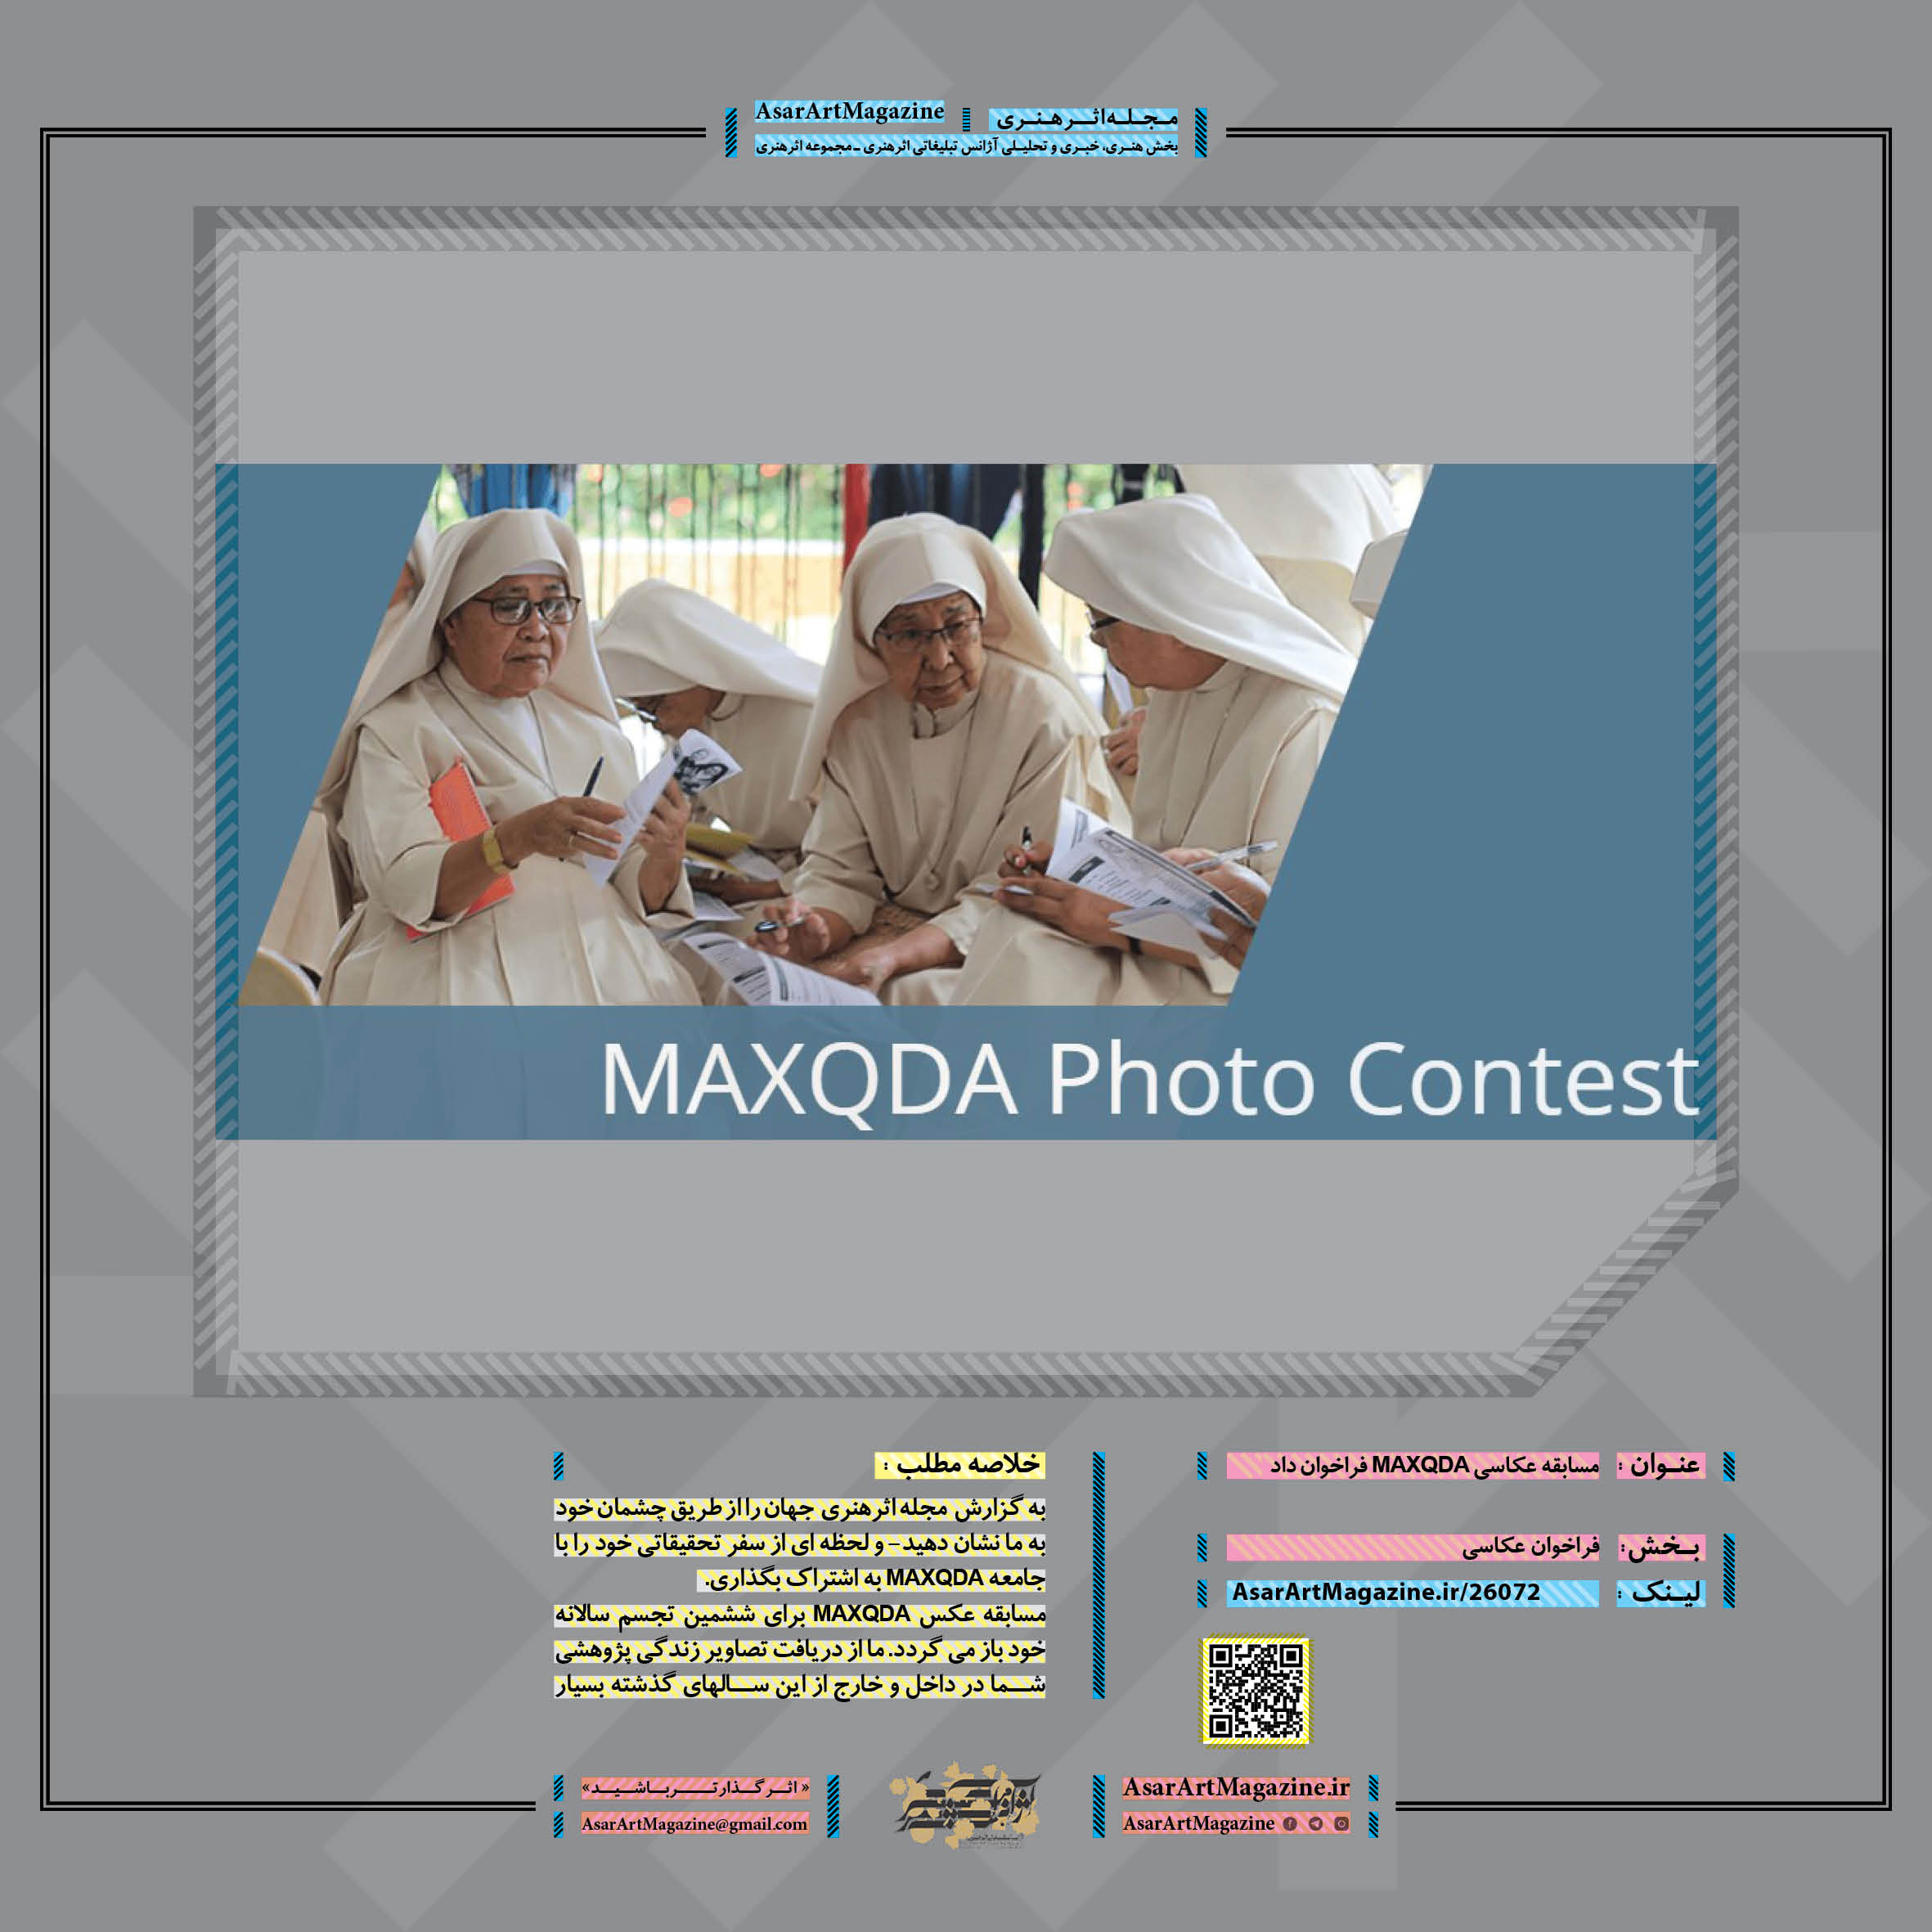 مسابقه عکاسی MAXQDA فراخوان داد  |  مجله اثرهنری، بخش هنری، خبری و تحلیلی مجموعه اثرهنری | مجله اثر هنری ـ «اثرگذارتر باشید»